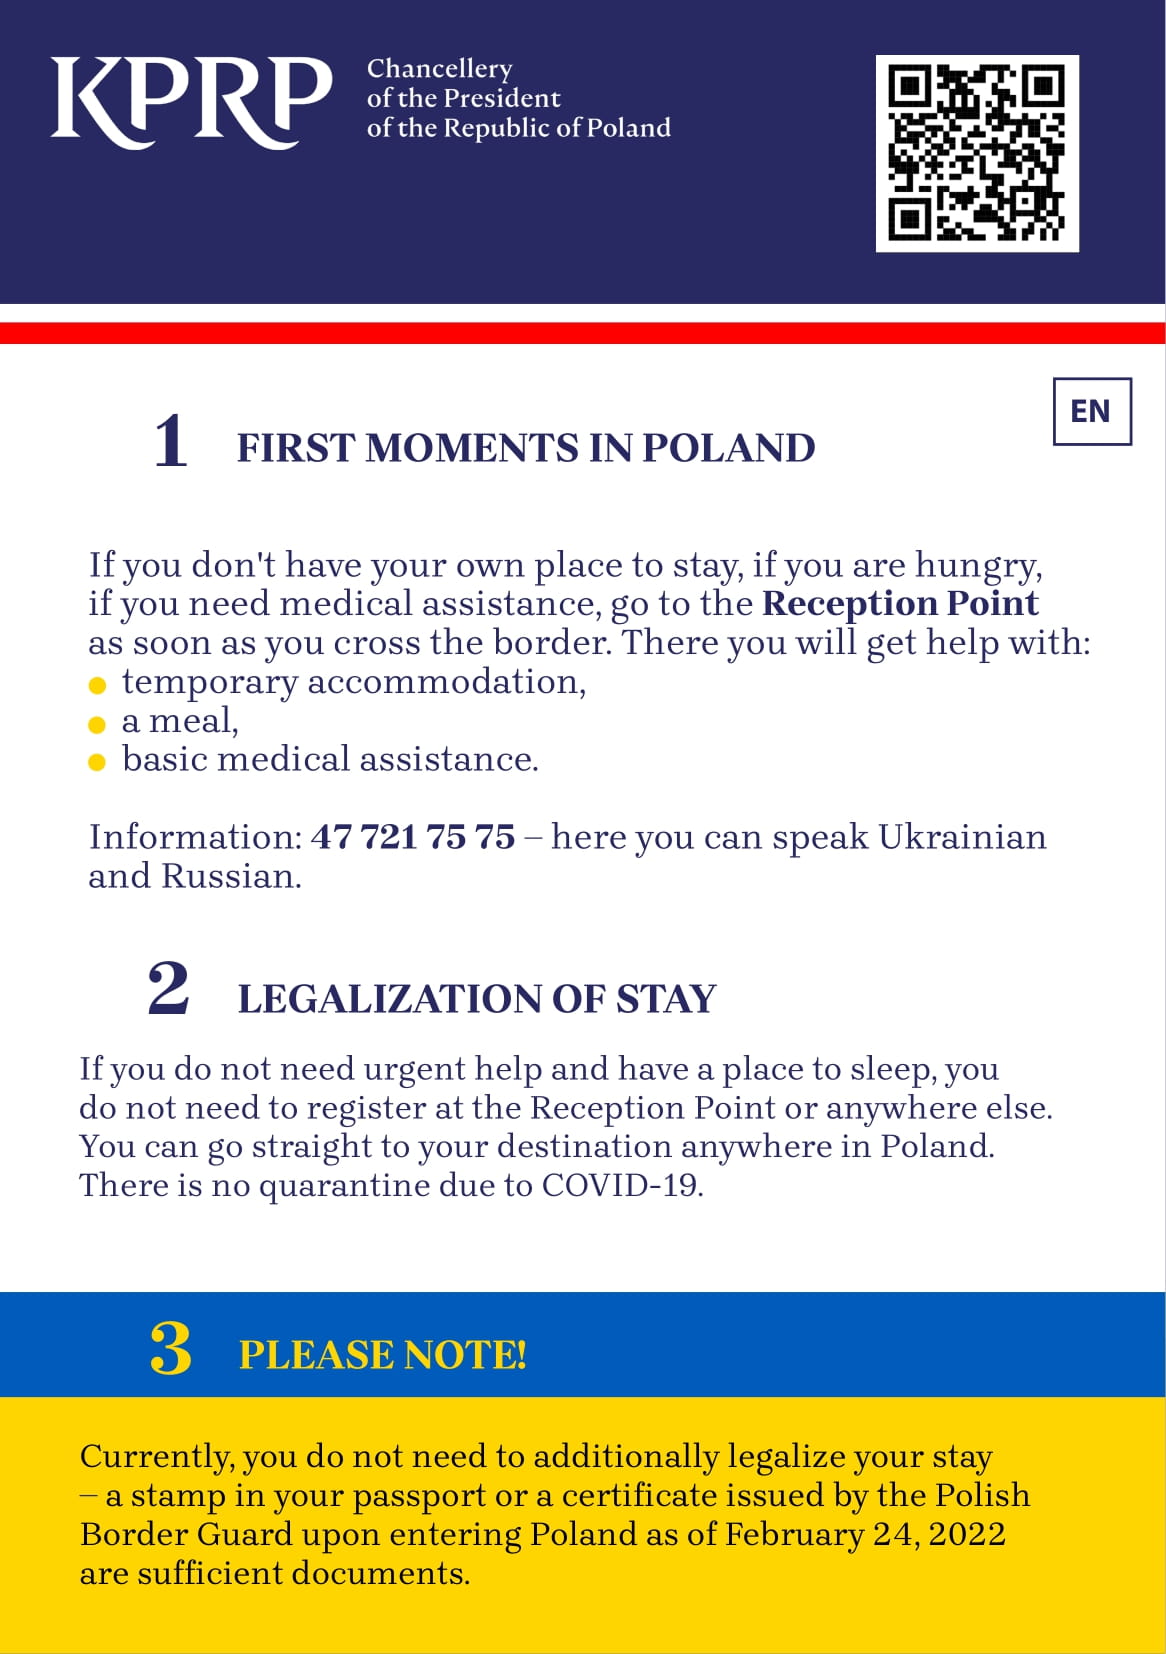 Kilka przydatnych informacji dla osób przyjeżdżających z Ukrainy po angielsku